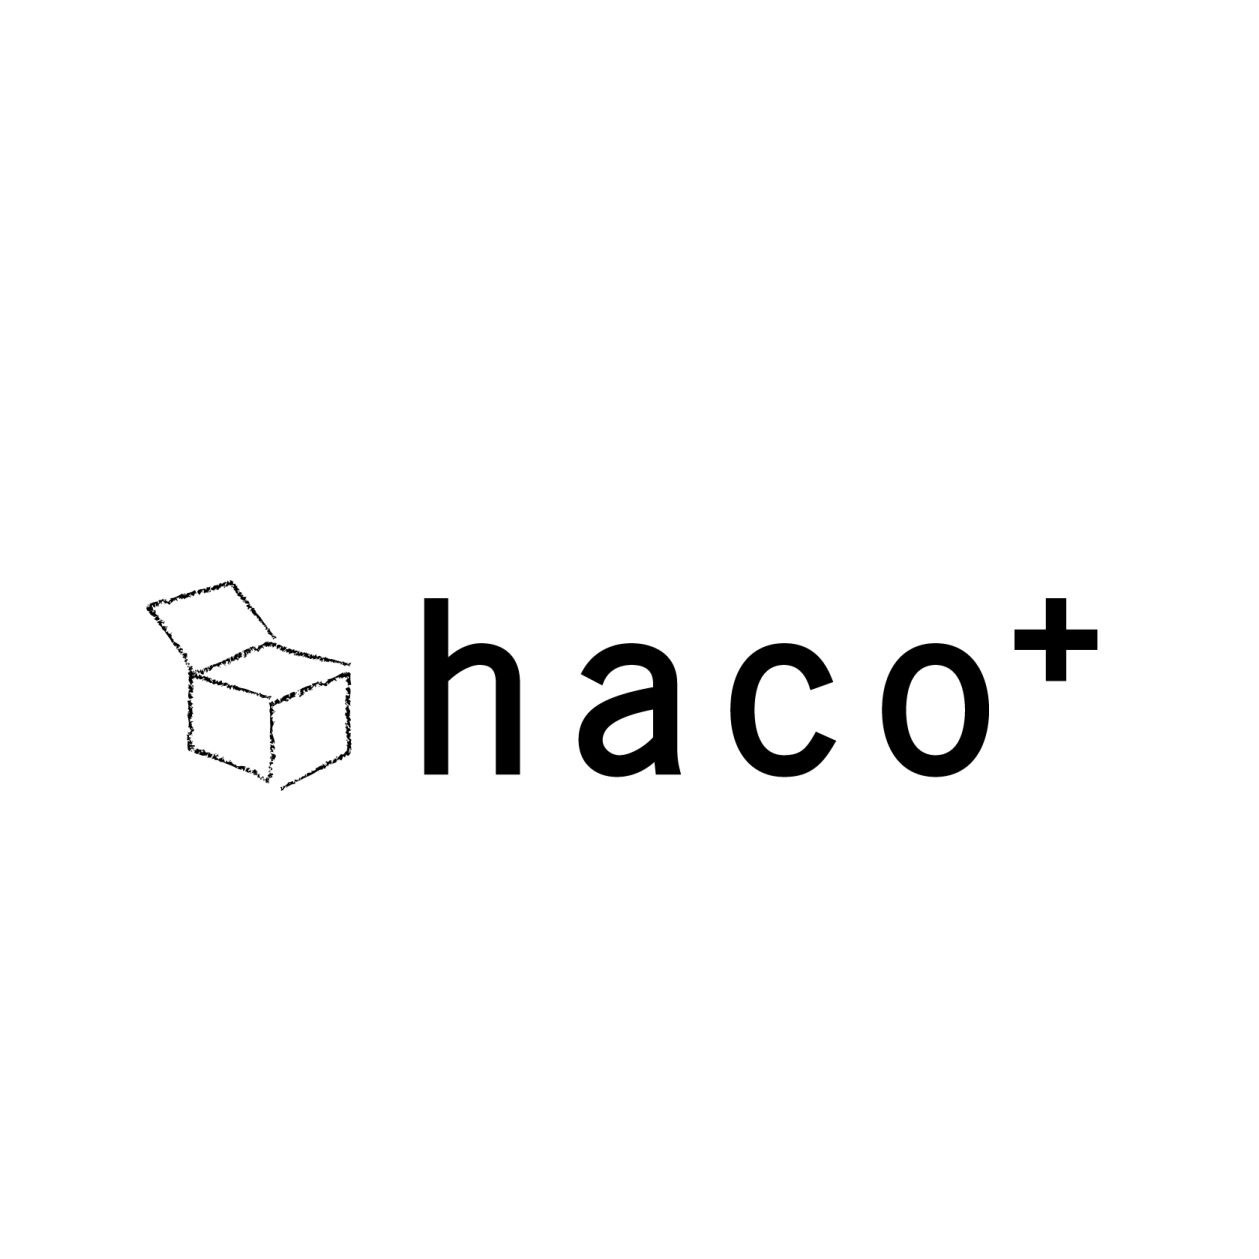 hacocomachiblog